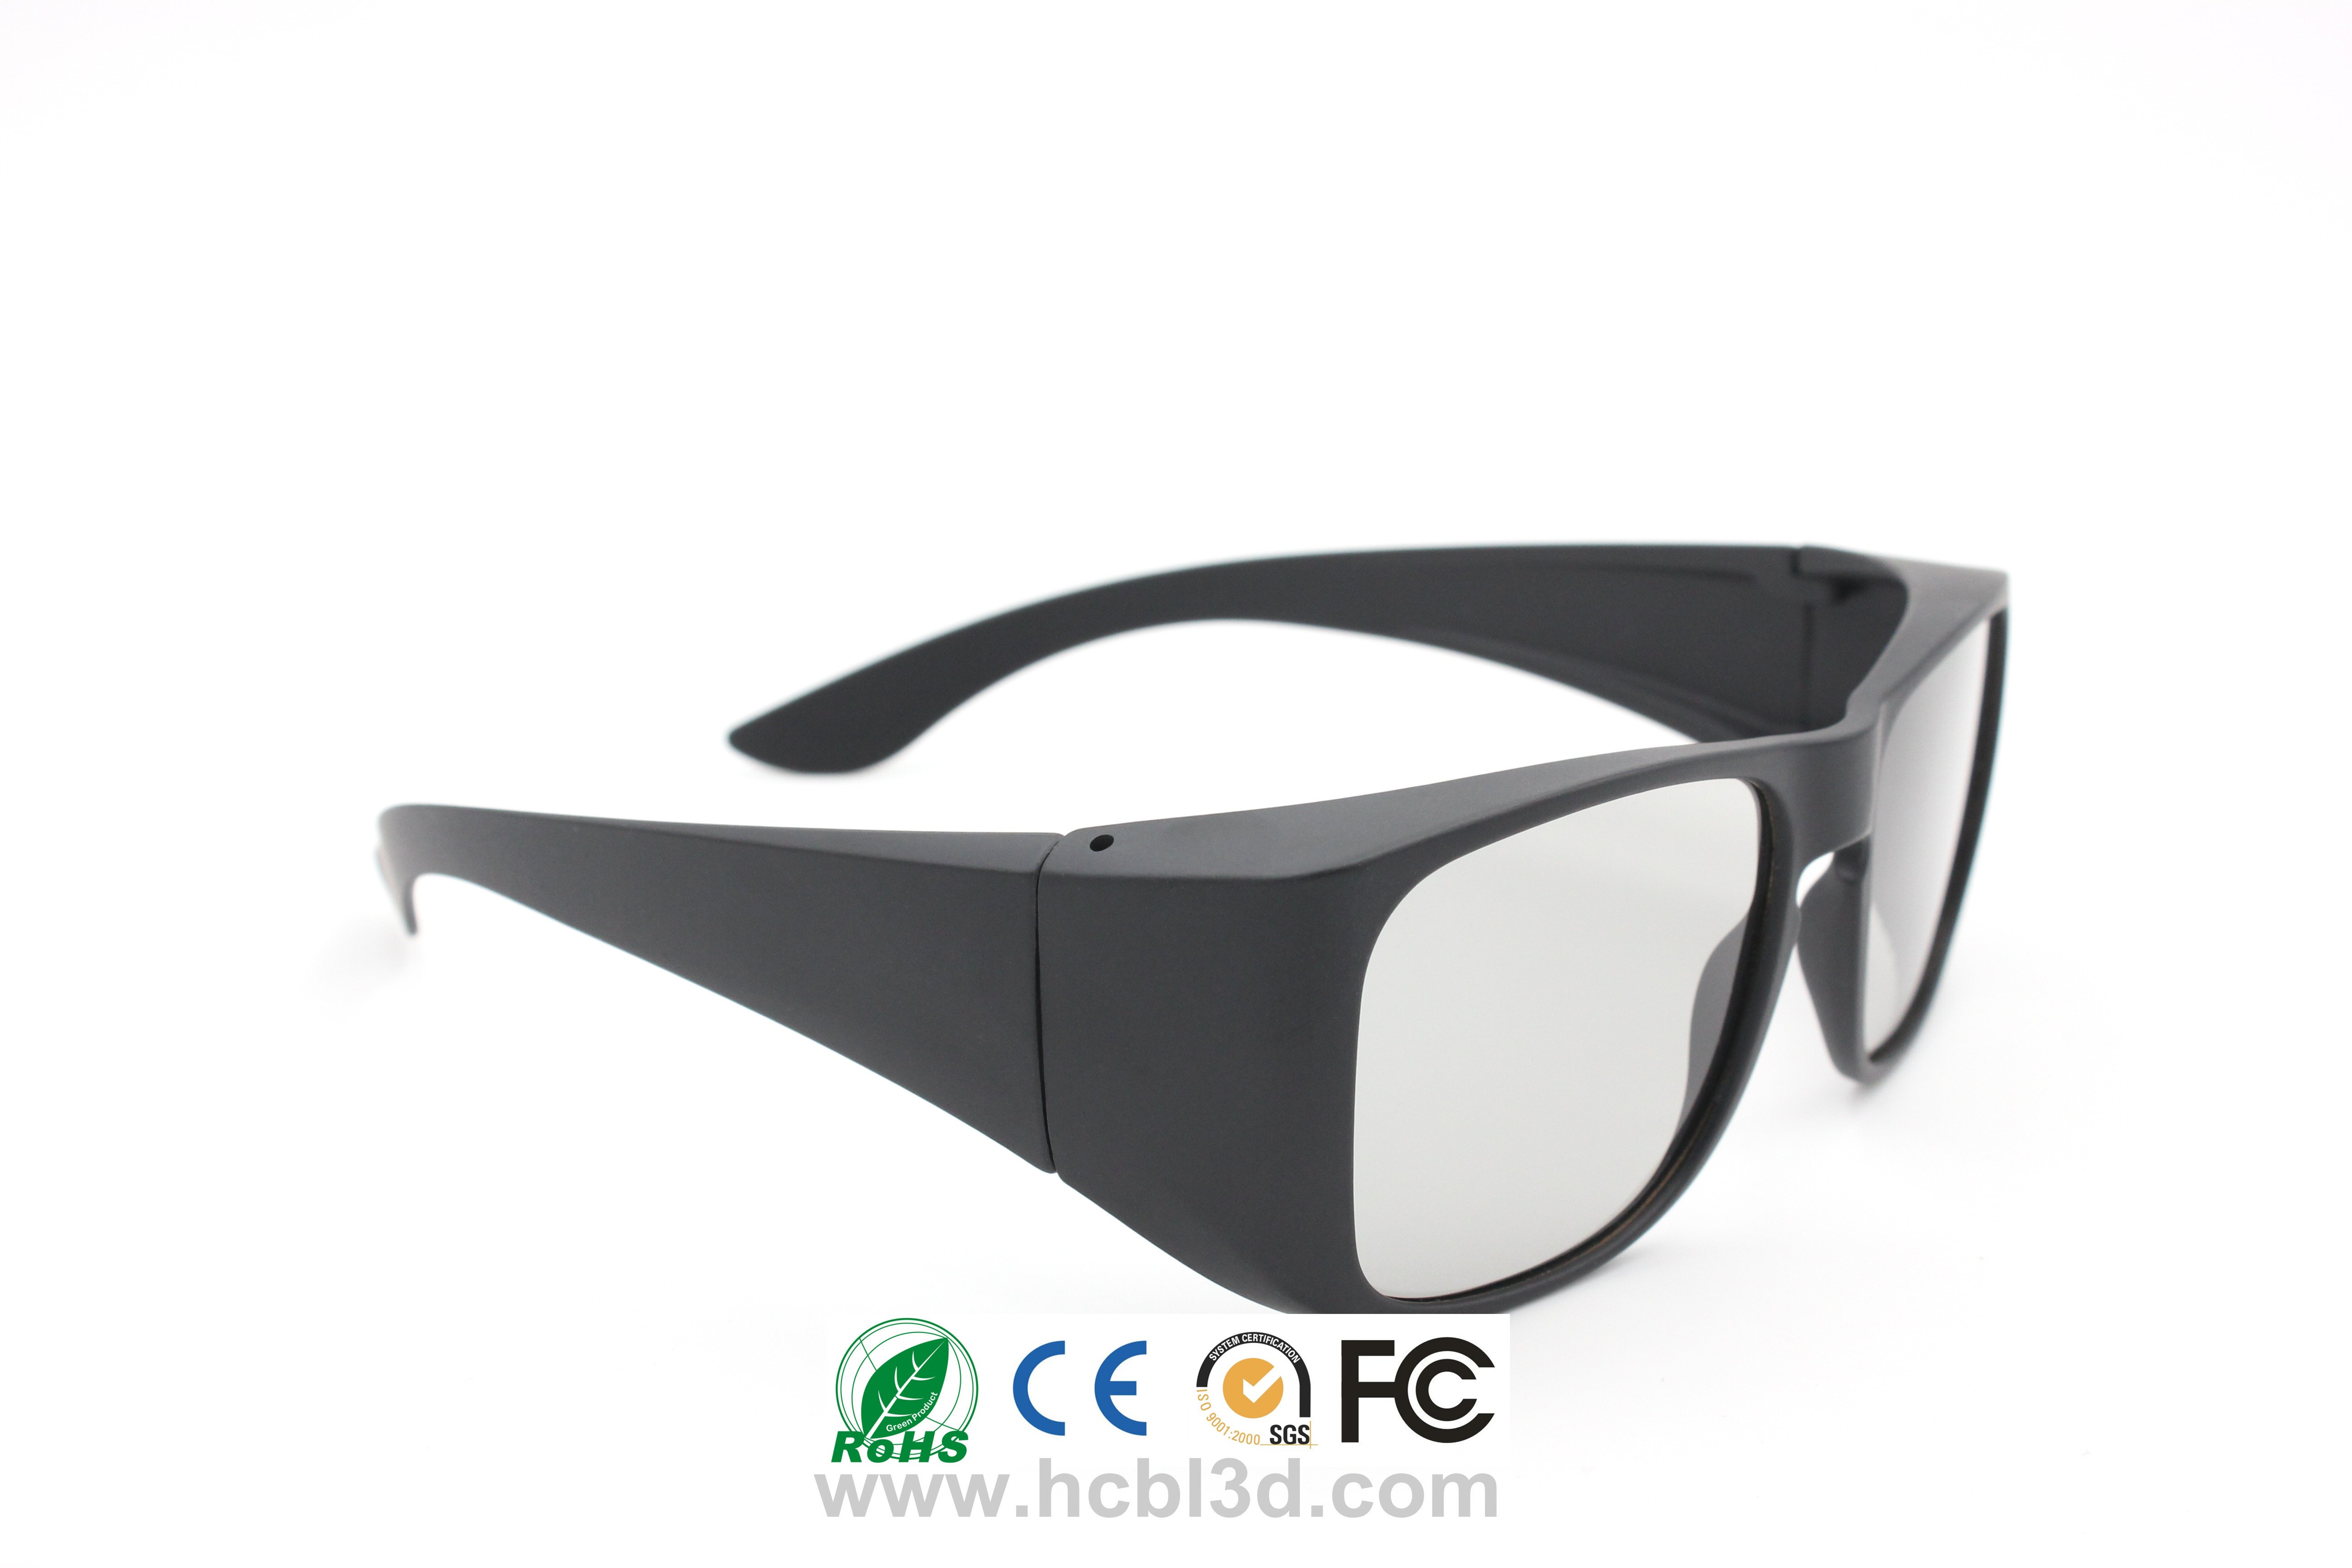 Gafas 3D con marco grande, tipo caravana, amplio campo de visión para cines digitales 3D